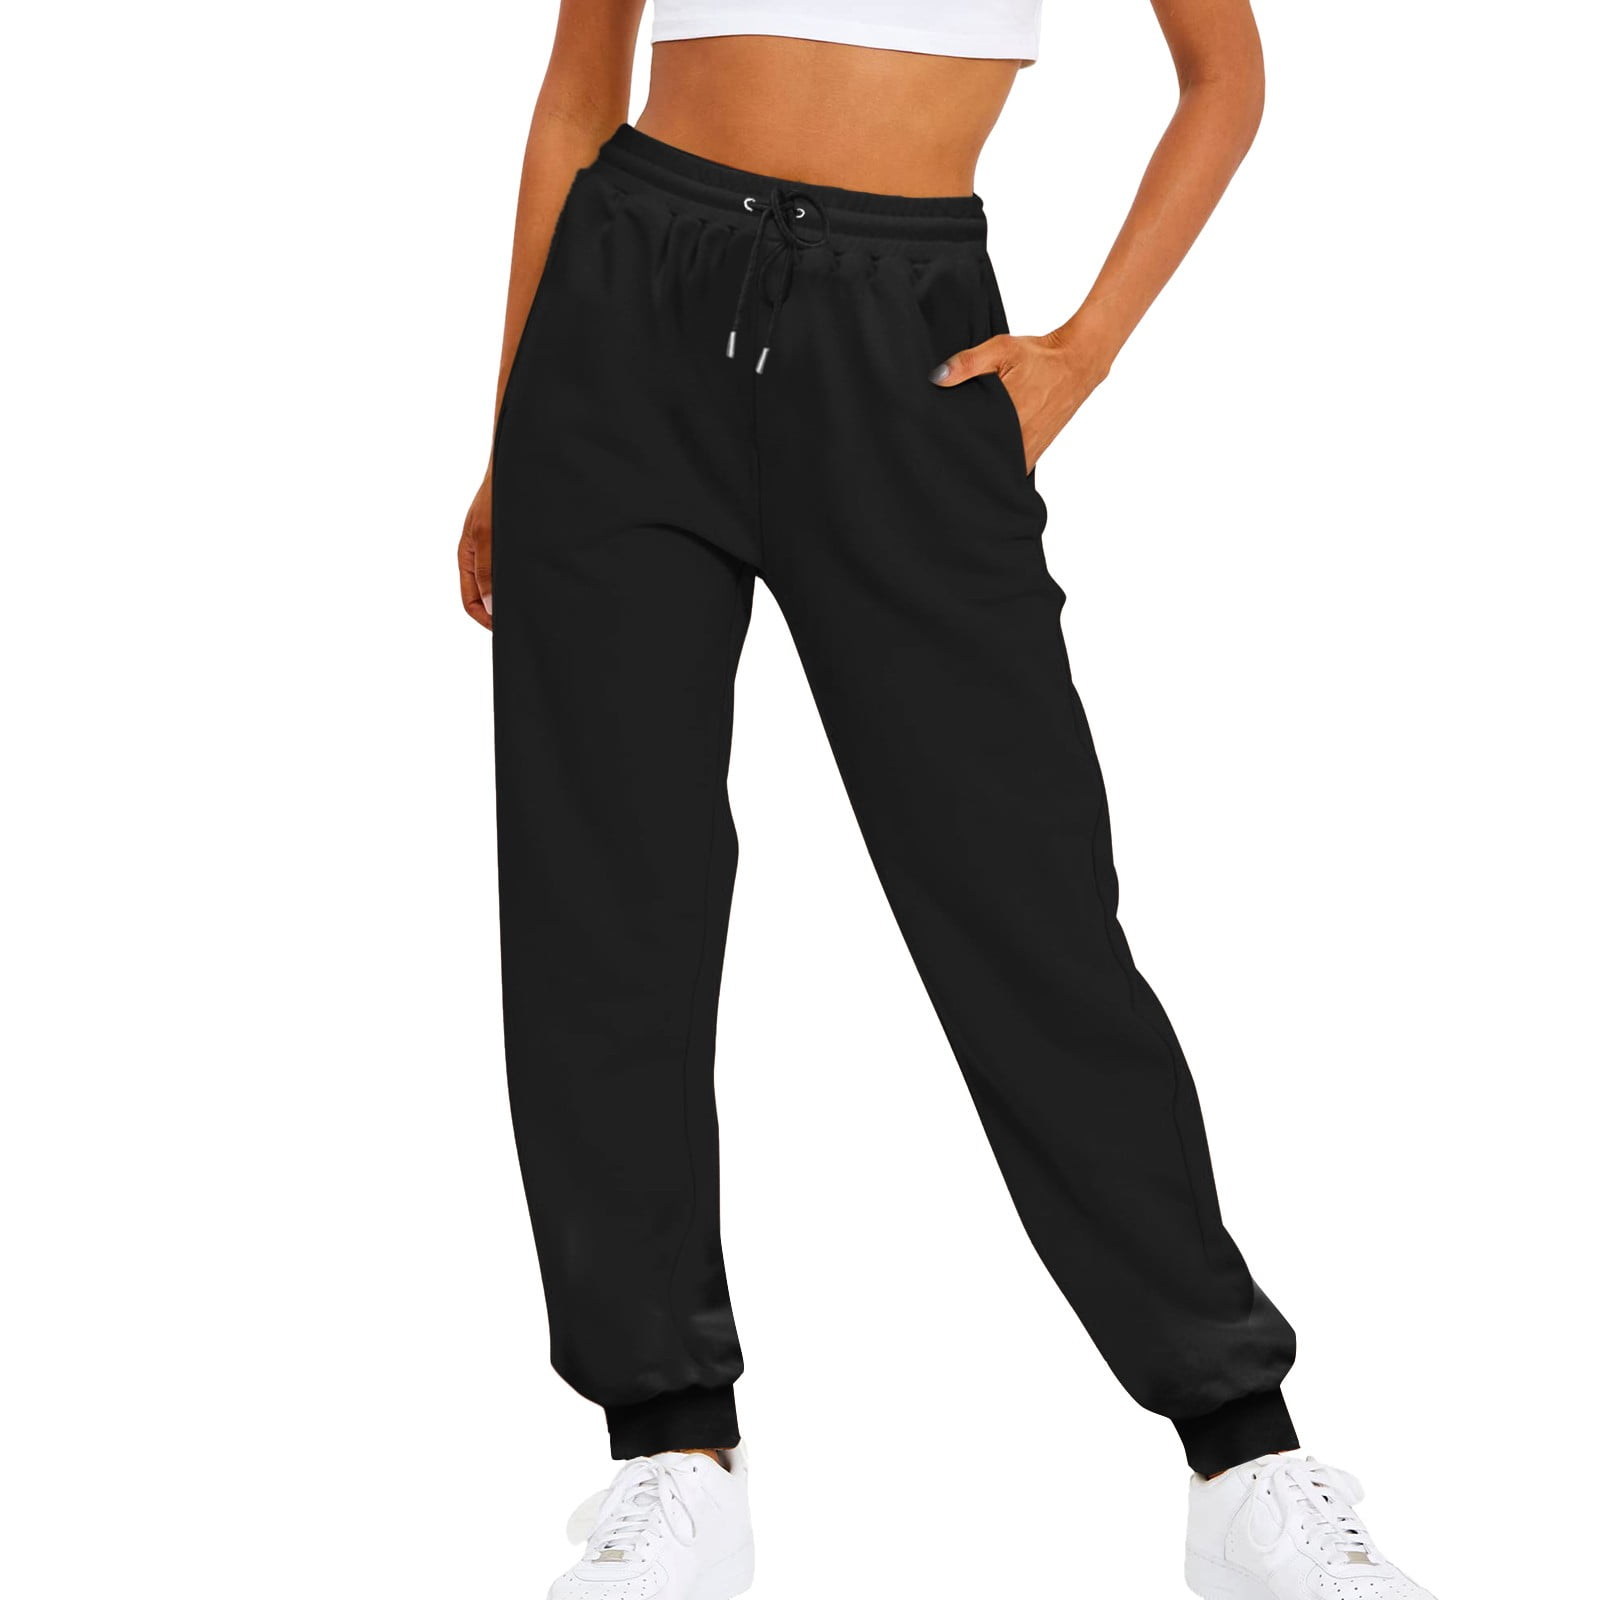  Women Baggy Hip Hop Pants 90s Athletic Graphic